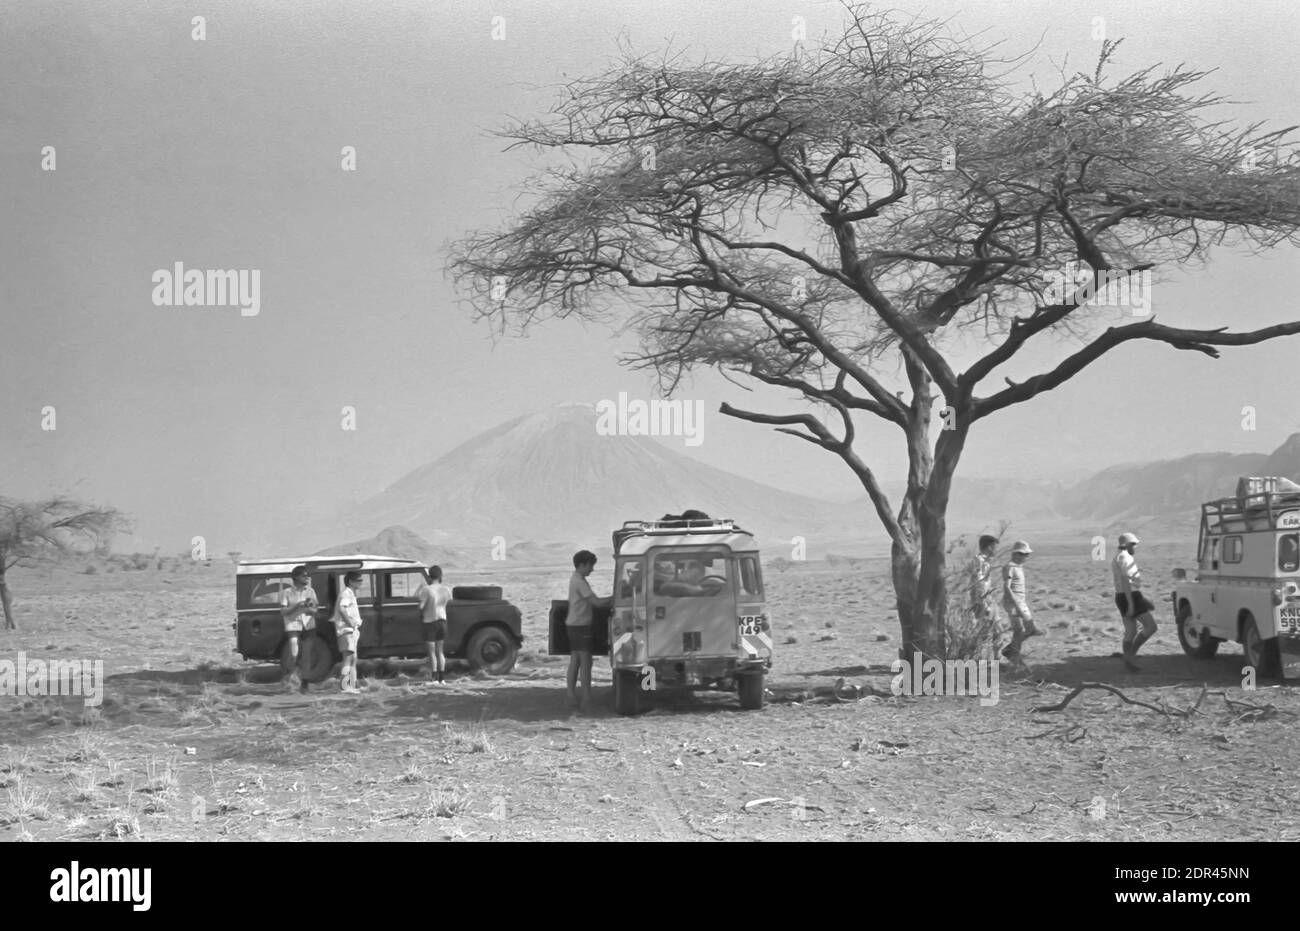 Este es el volcán activo Ol Doinyo Lengai 9711 pies de altura situado cerca del Lago Natron en el valle Rift de Tanzania en África Oriental.conocido por el Maasai como la Montaña de Dios. Lengai ha tenido varias erupciones en 2002,2008 y ha aparecido en varios de los documentales de David Attenborough Foto de stock